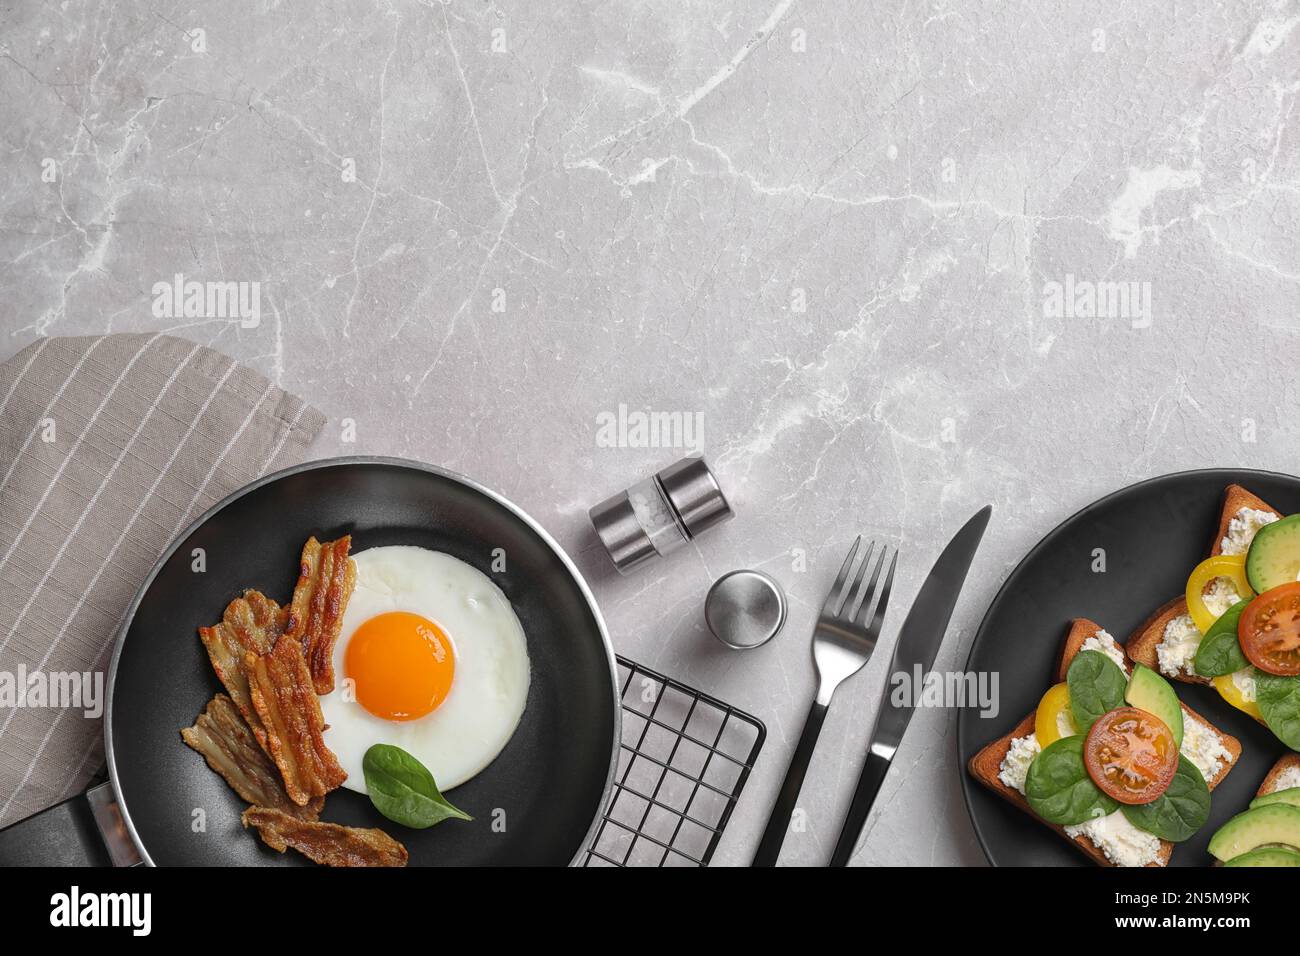 Leckeres Frühstück mit Spiegelei, Speck und Sandwiches, serviert auf einem hellgrauen Marmortisch, flach liegend. Platz für Text Stockfoto